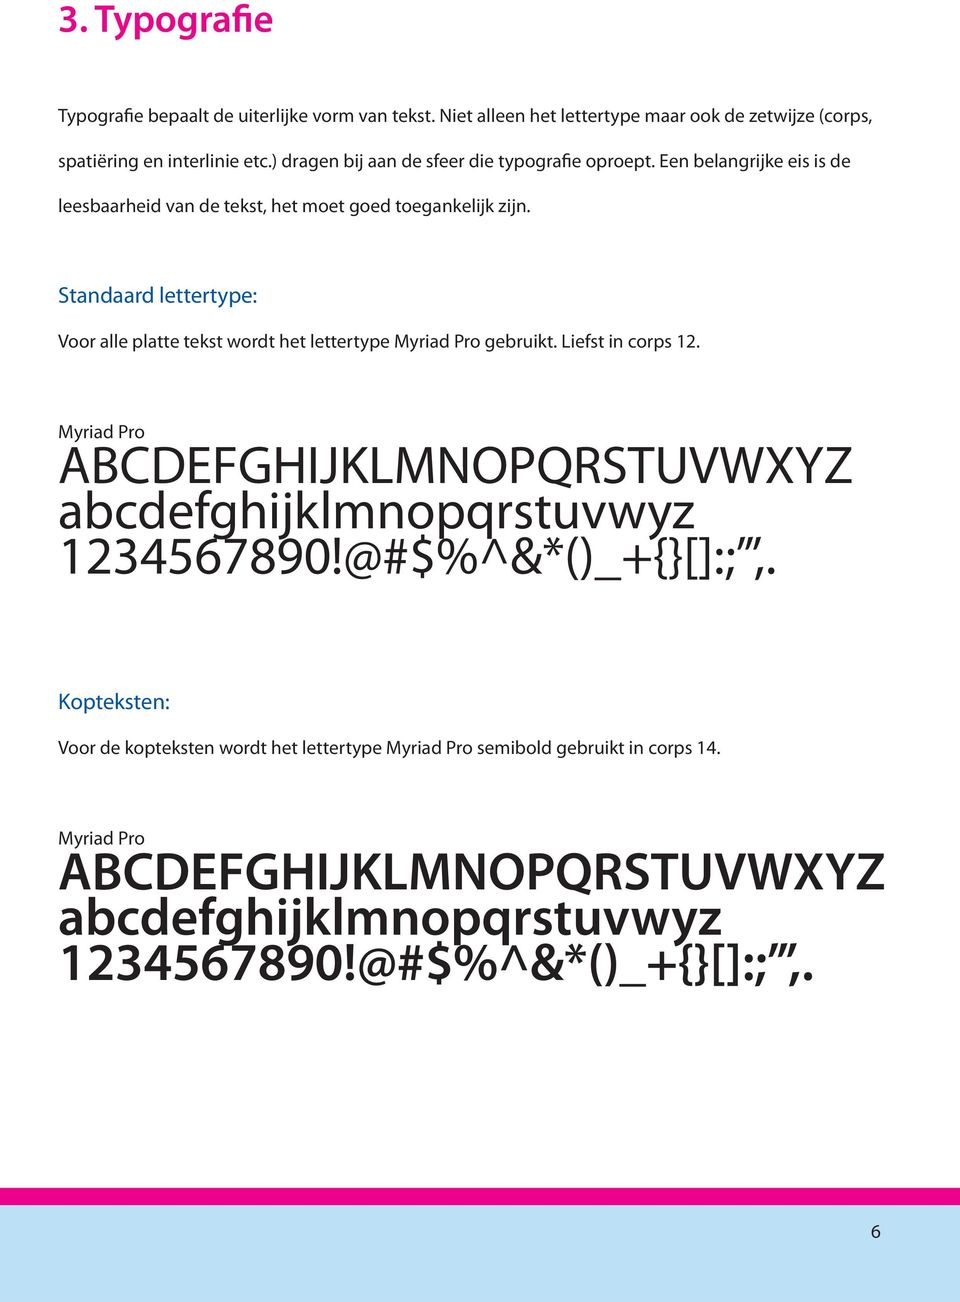 Standaard lettertype: Voor alle platte tekst wordt het lettertype Myriad Pro gebruikt. Liefst in corps 12.